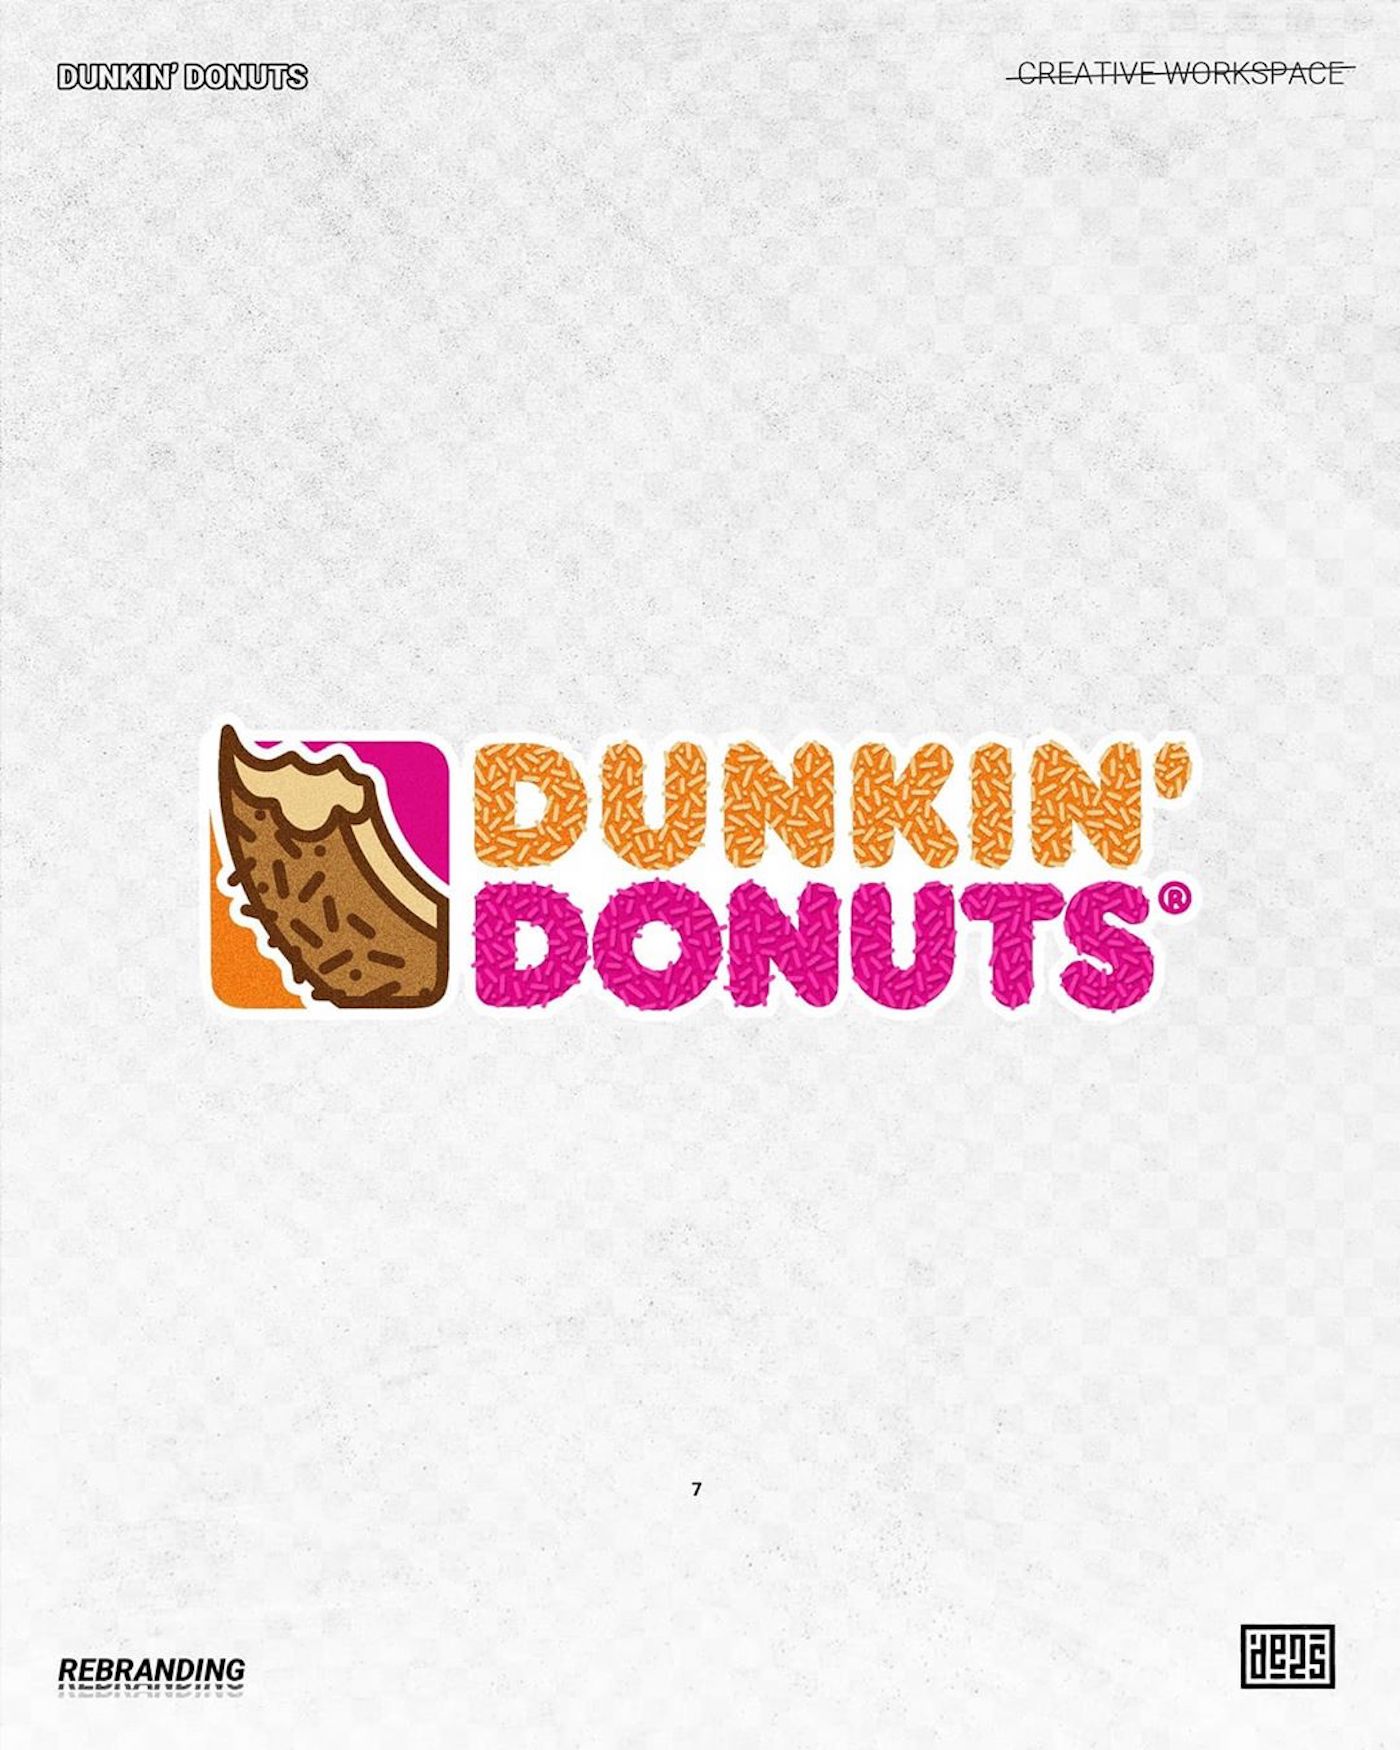 Logo de Dunkin' Donuts rebrandé par de2s